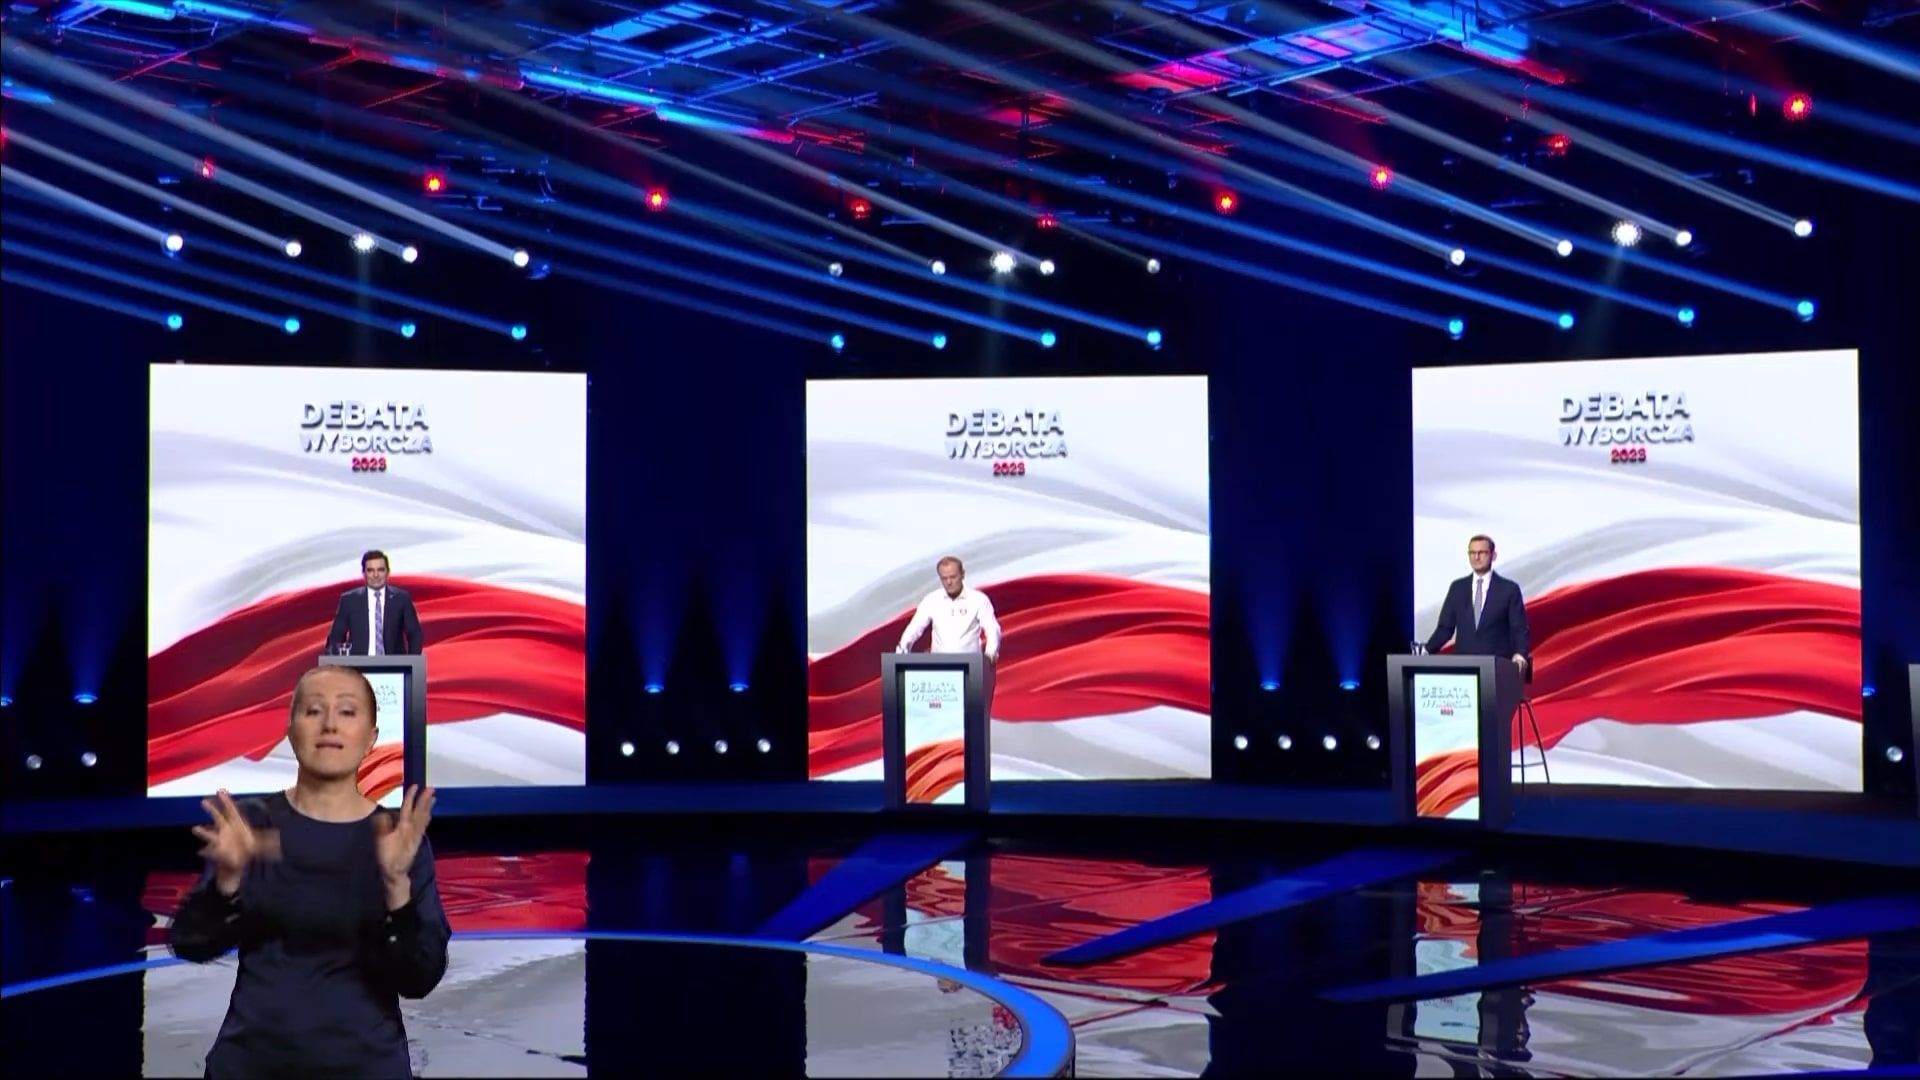 Na debacie zasugerowano, że dolano czegoś do szklanki, fot. kadr z „Debaty wyborczej” w 2023 roku 2.jpg